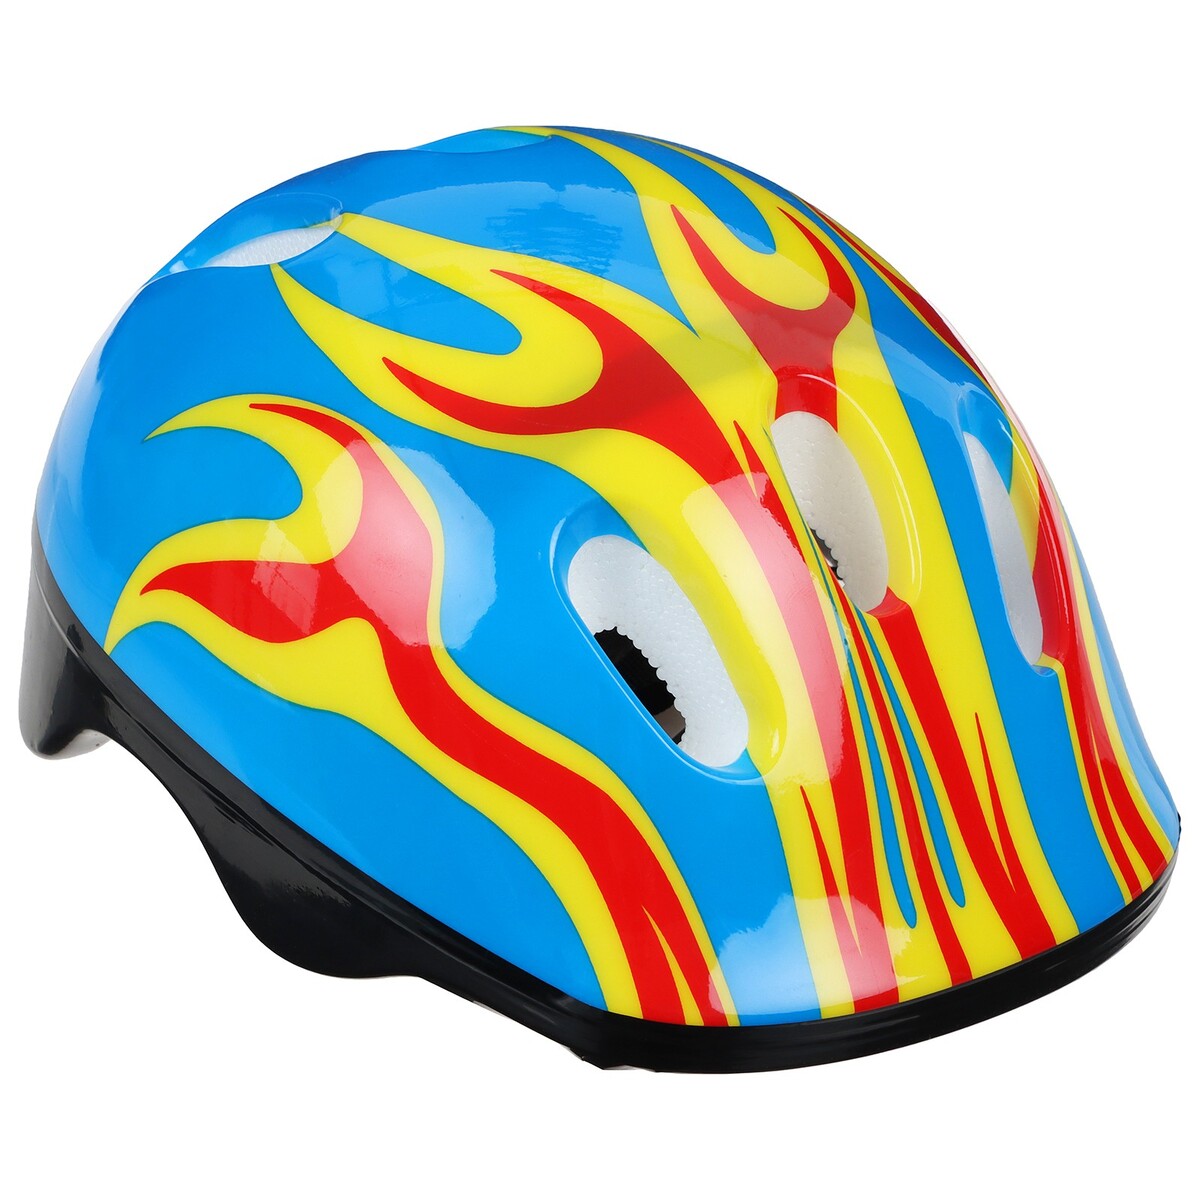 Шлем защитный детский onlytop ot-h6, обхват 52-54 см, цвет синий forward шлем защитный klonk mtb 12010 ростовка s m